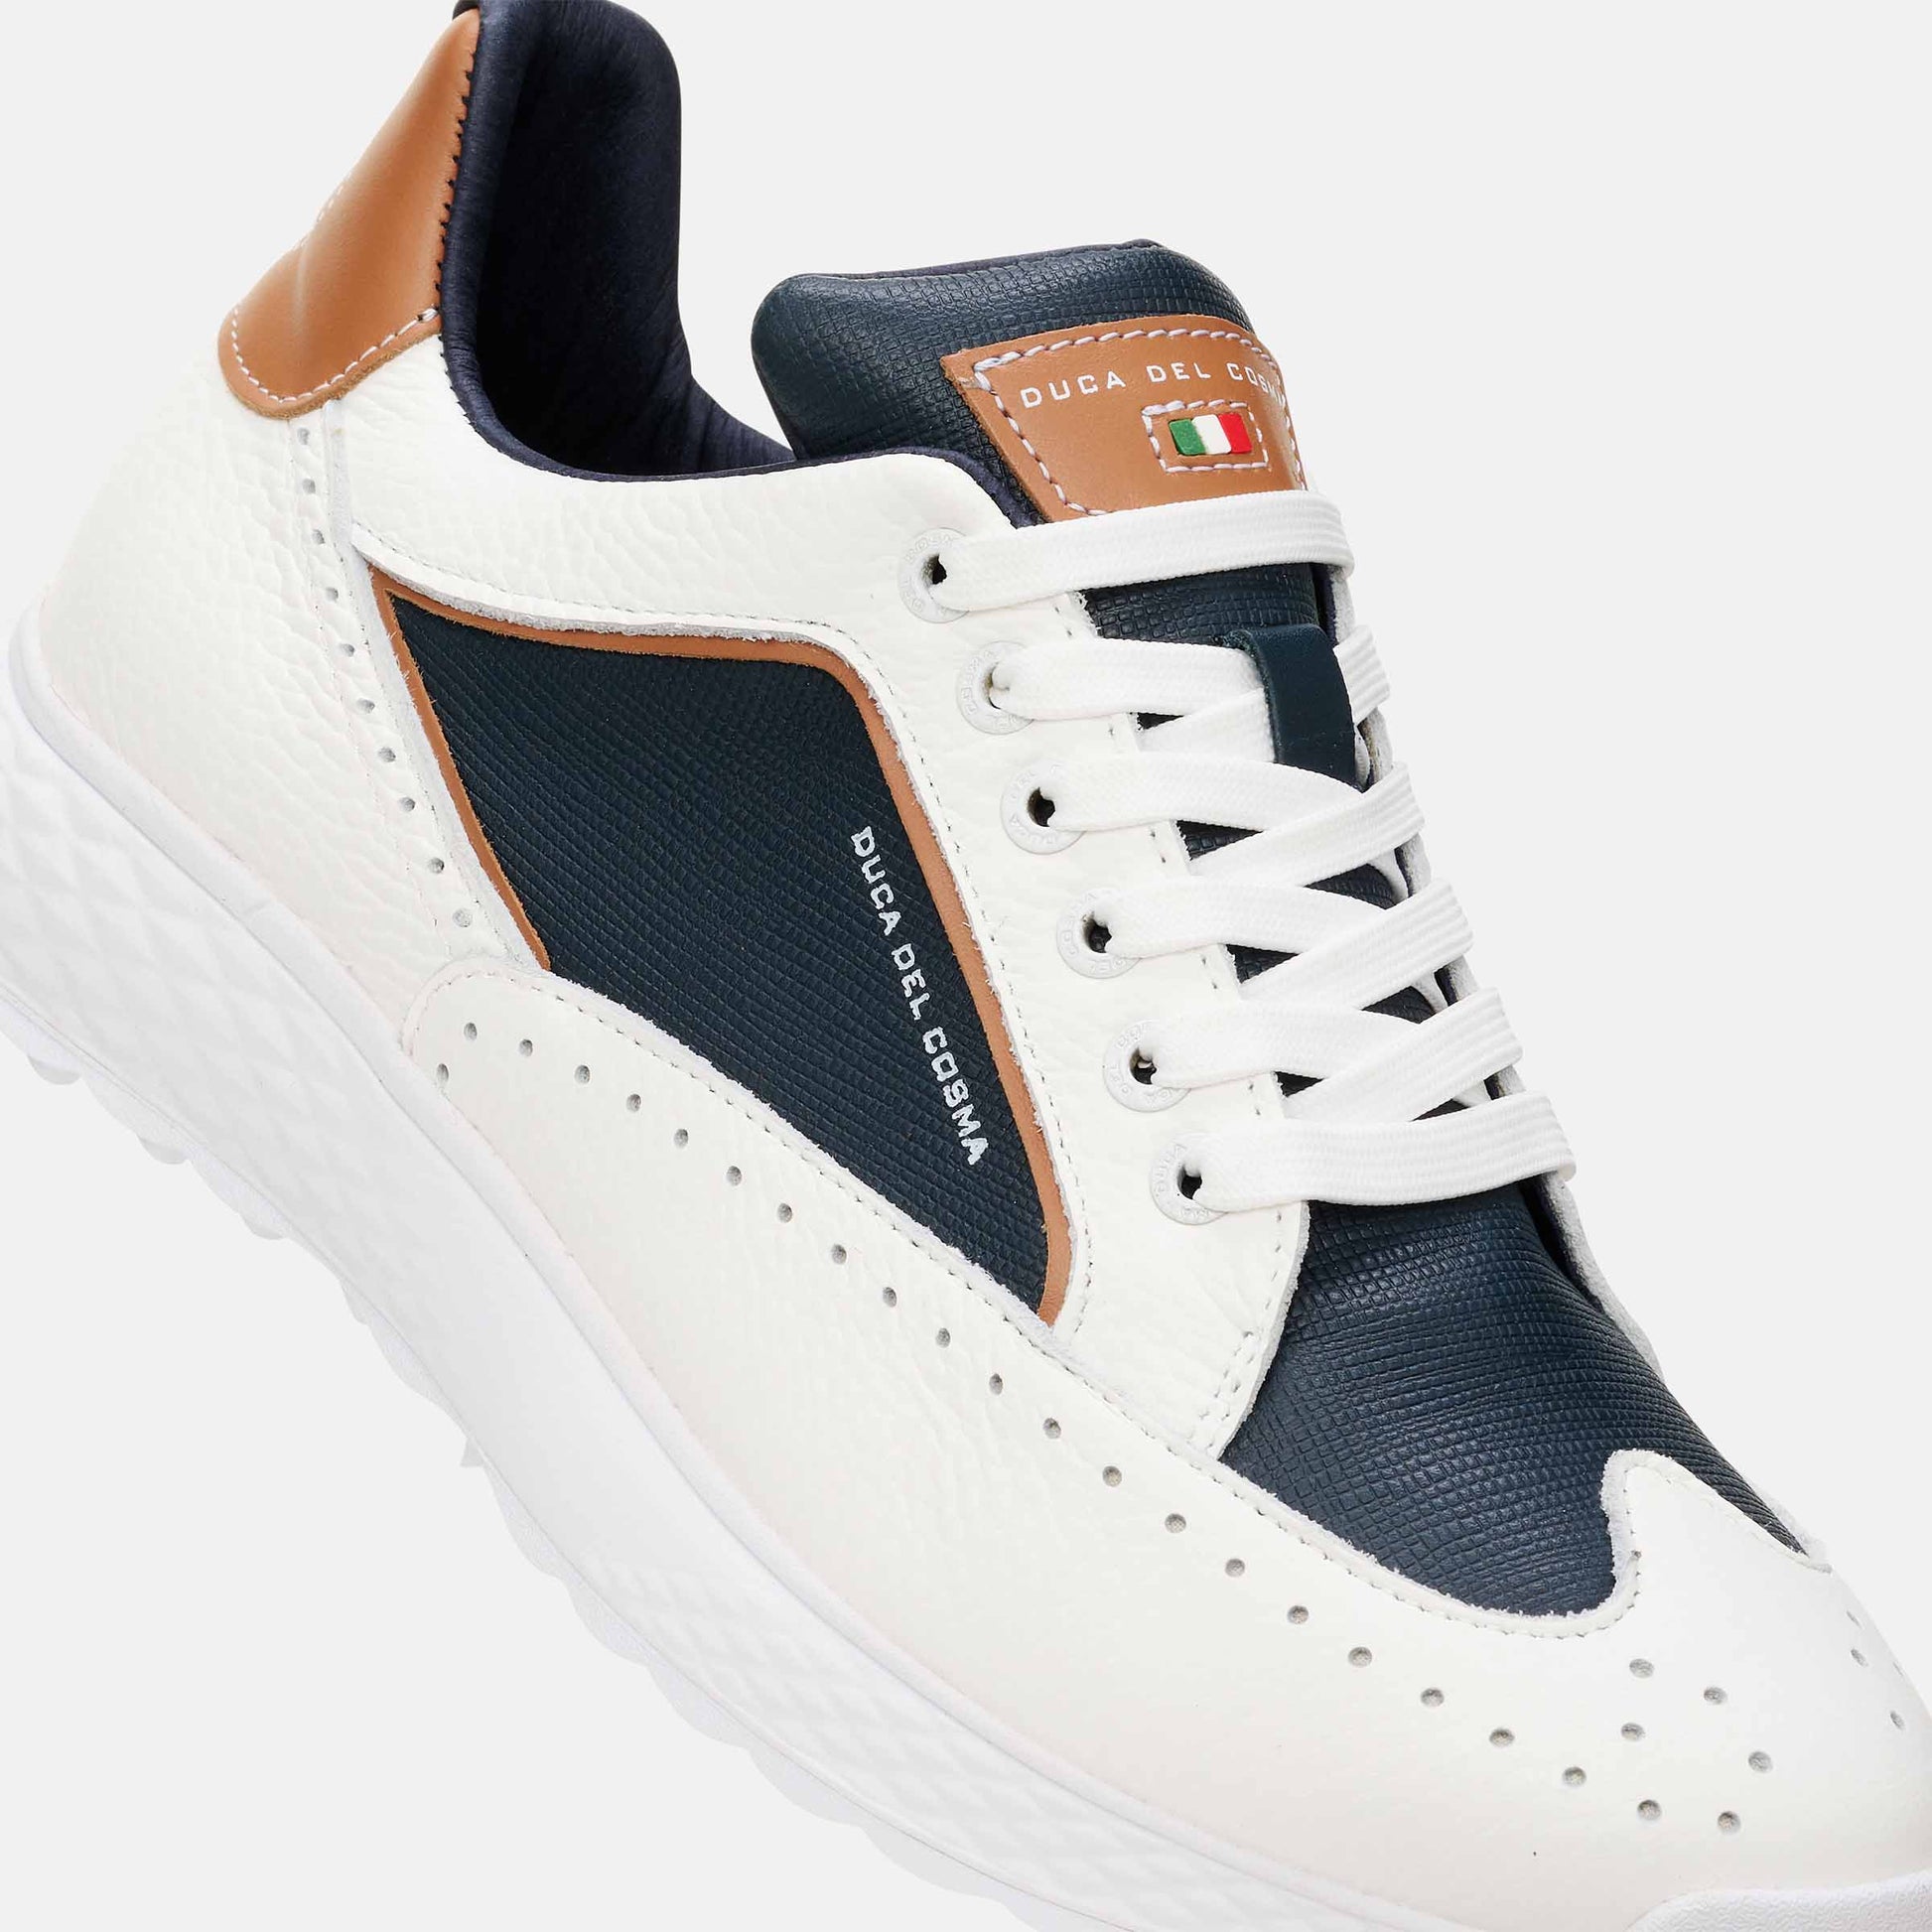 White Golf Shoes, Men's Blue Golf Shoes, Men's Golf Shoes Duca del Cosma, Spikeless Golf Shoes, Waterproof Golf Shoes.